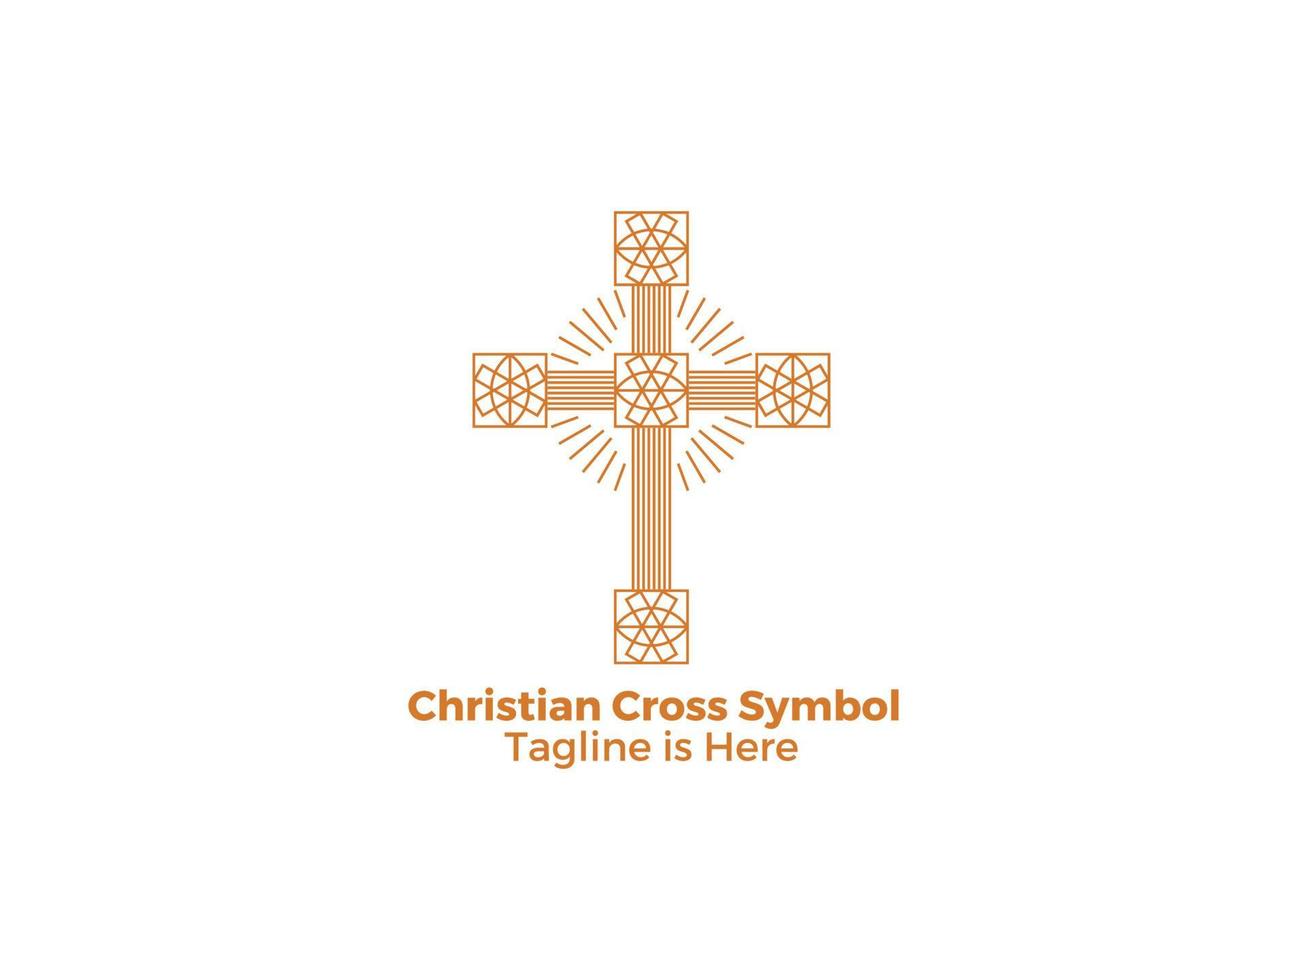 sier religie christelijk katholicisme kruis pictogram geïsoleerd op een witte achtergrond gratis vector